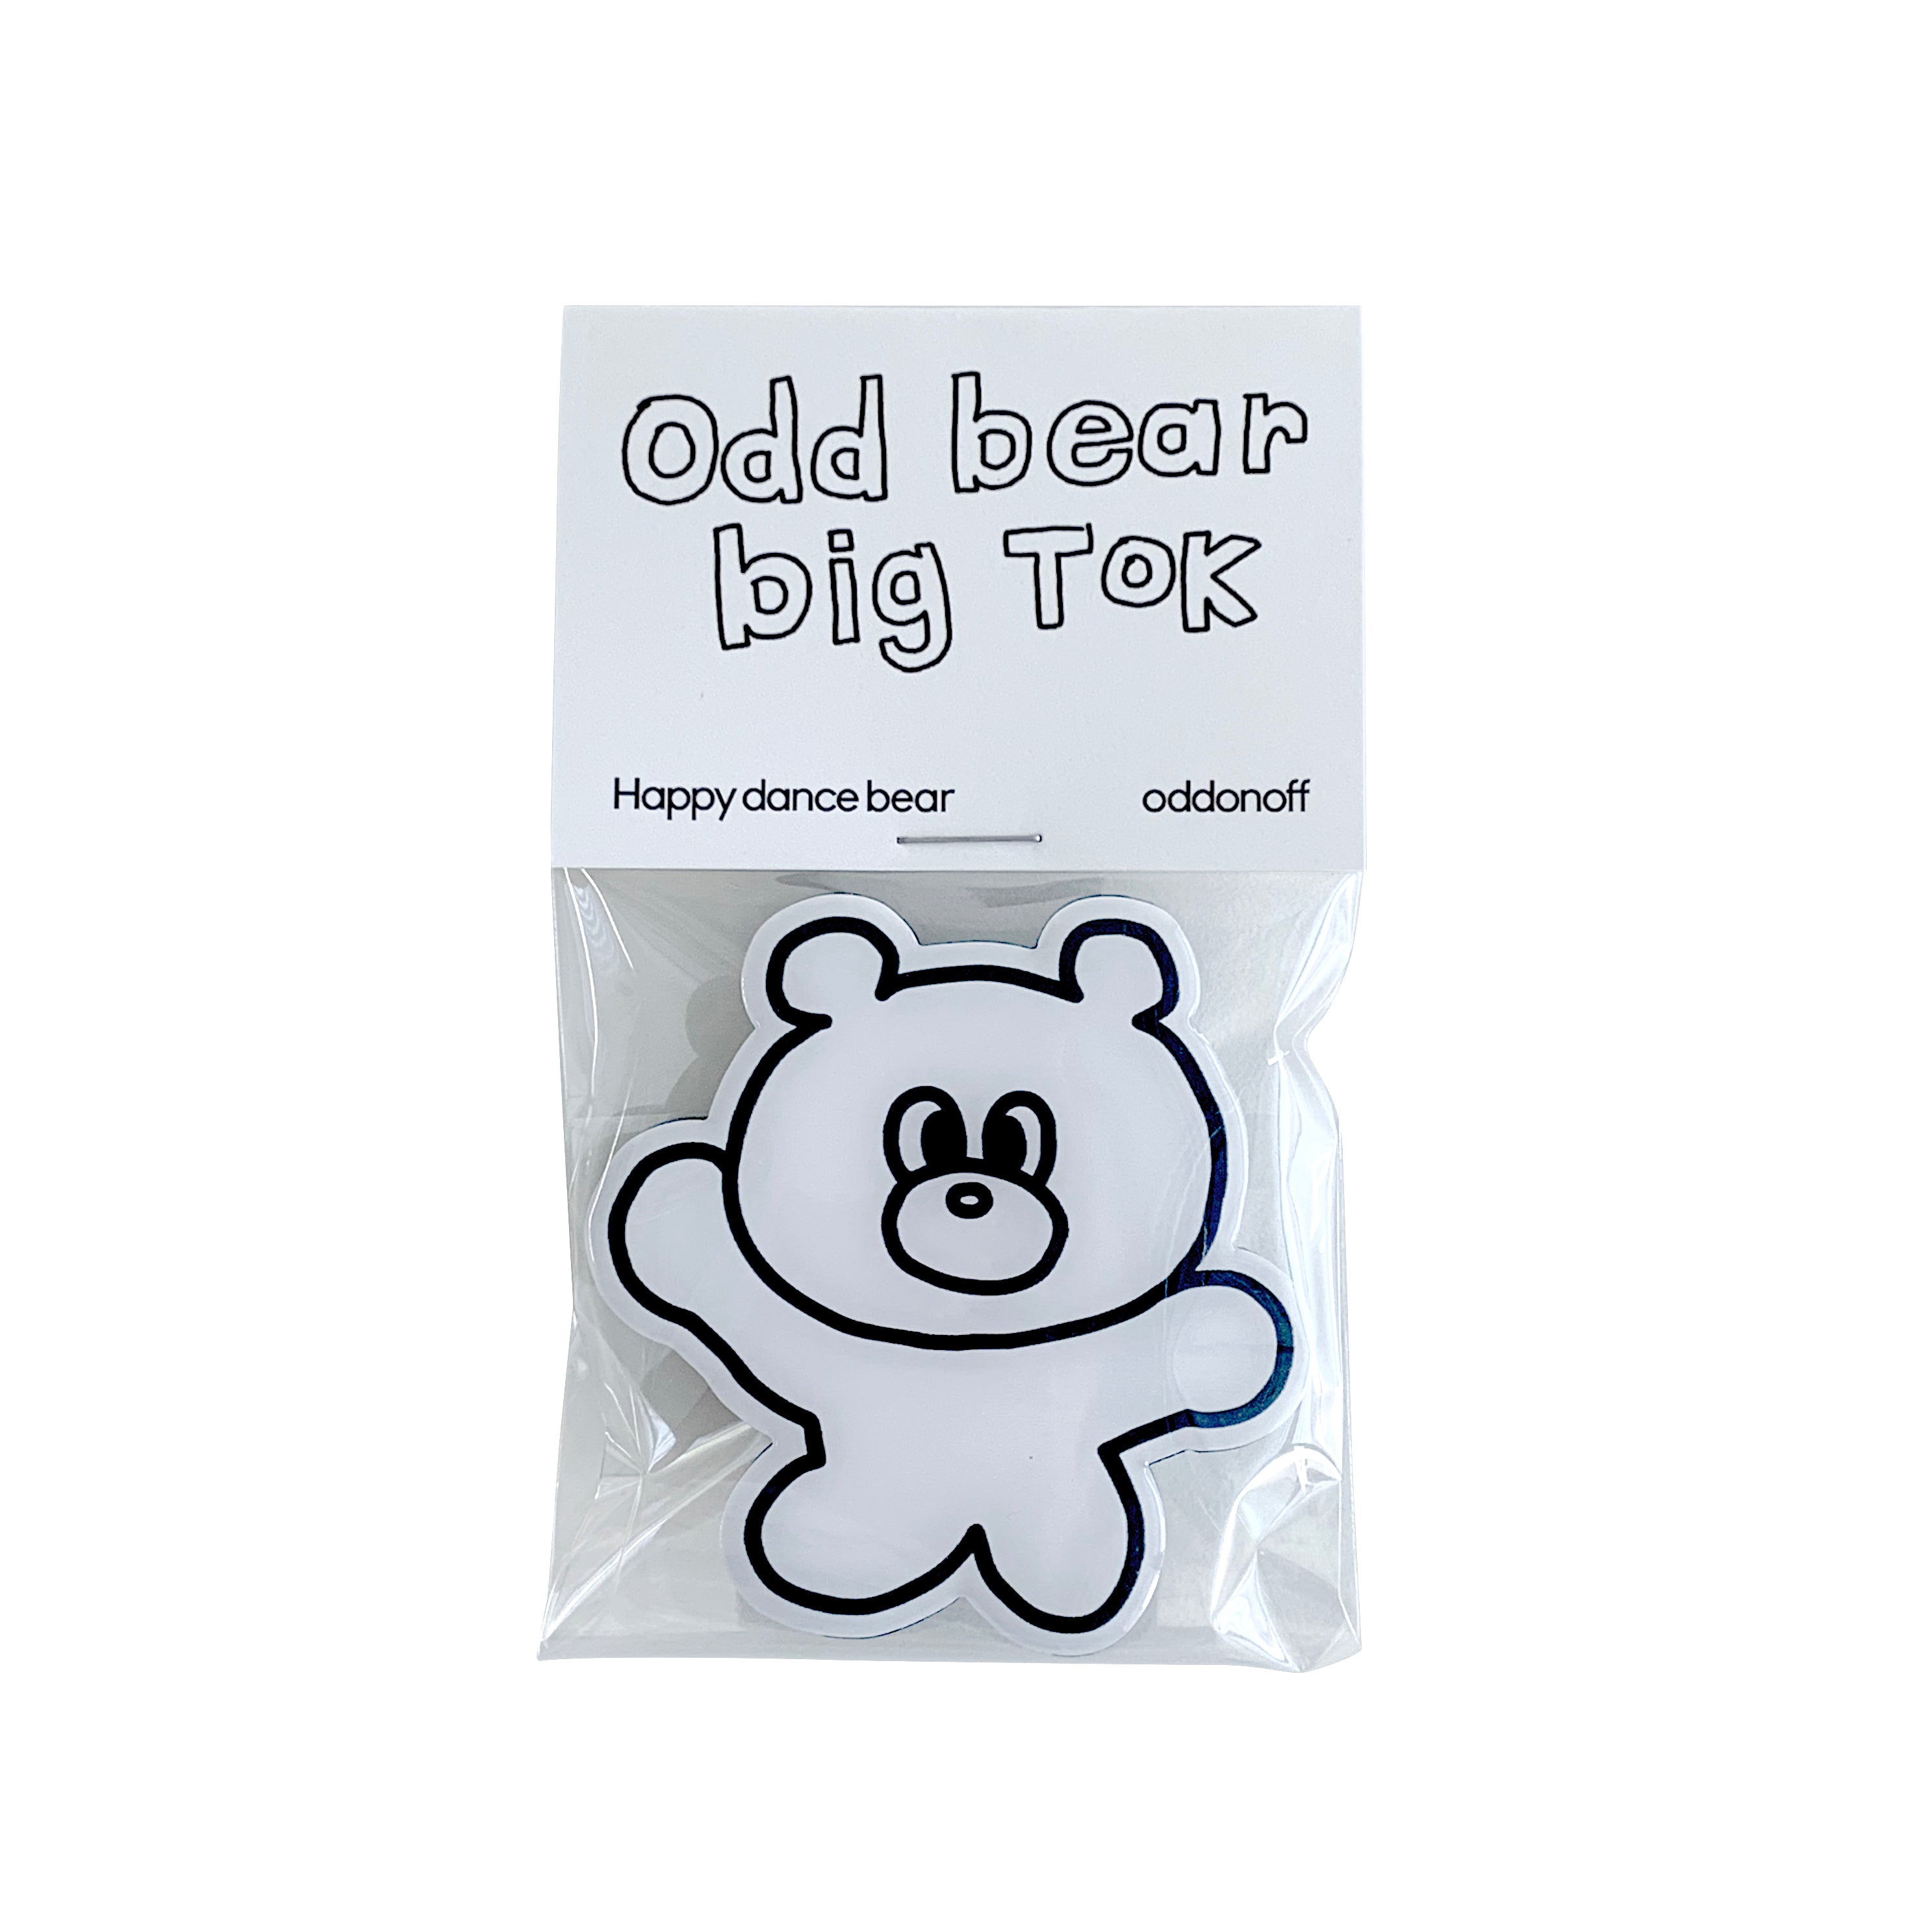 Big Odd Bear Tok